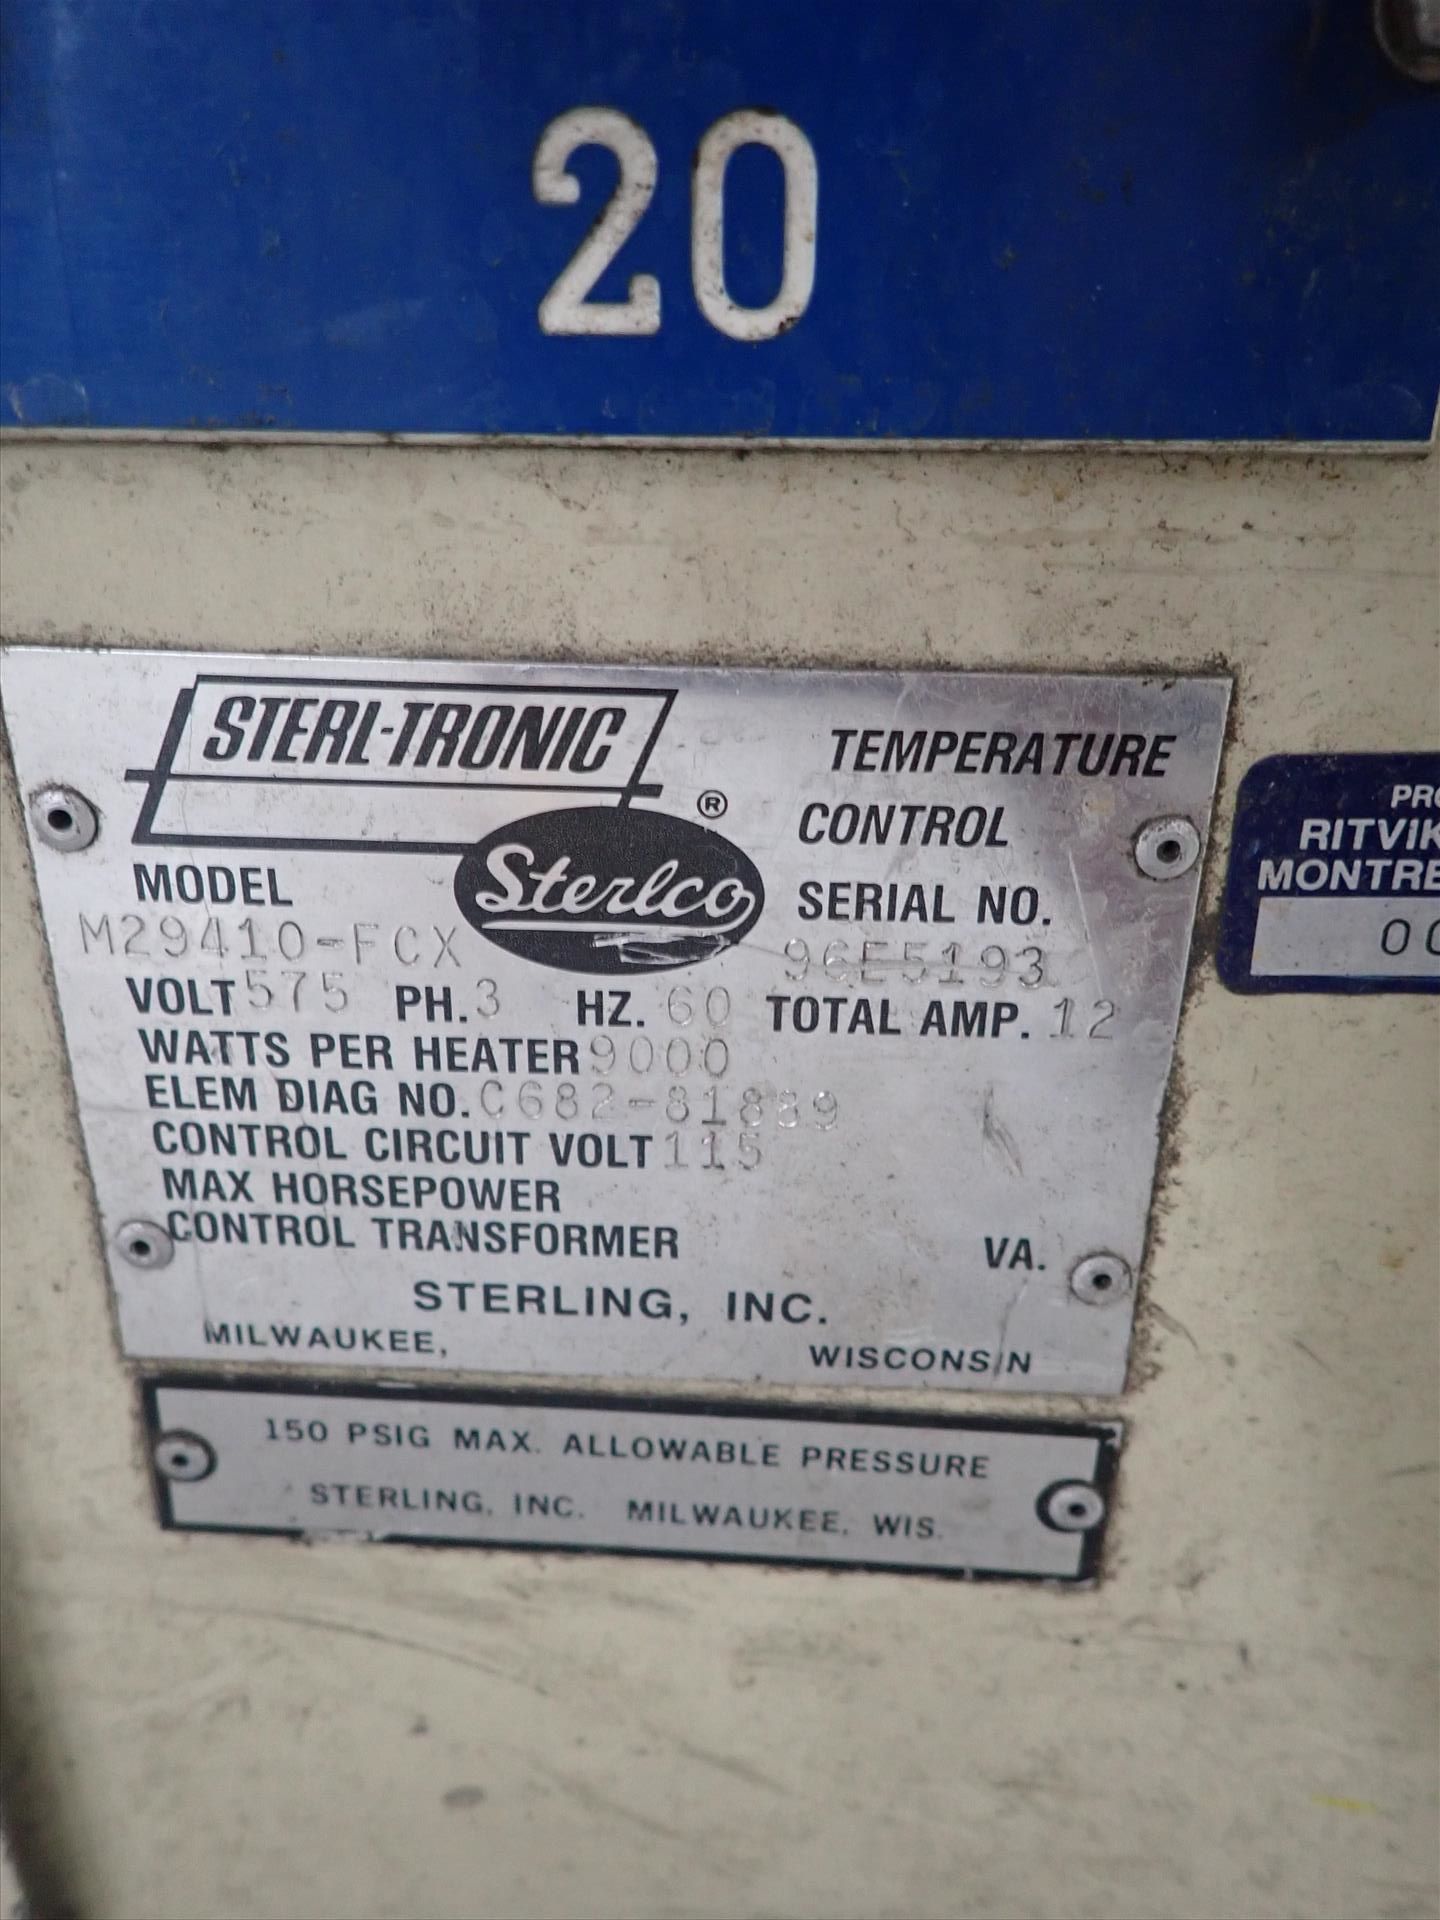 Sterlco water temperature controller, mod. M23410-FCX, ser. no. 96E5193 - Image 2 of 2